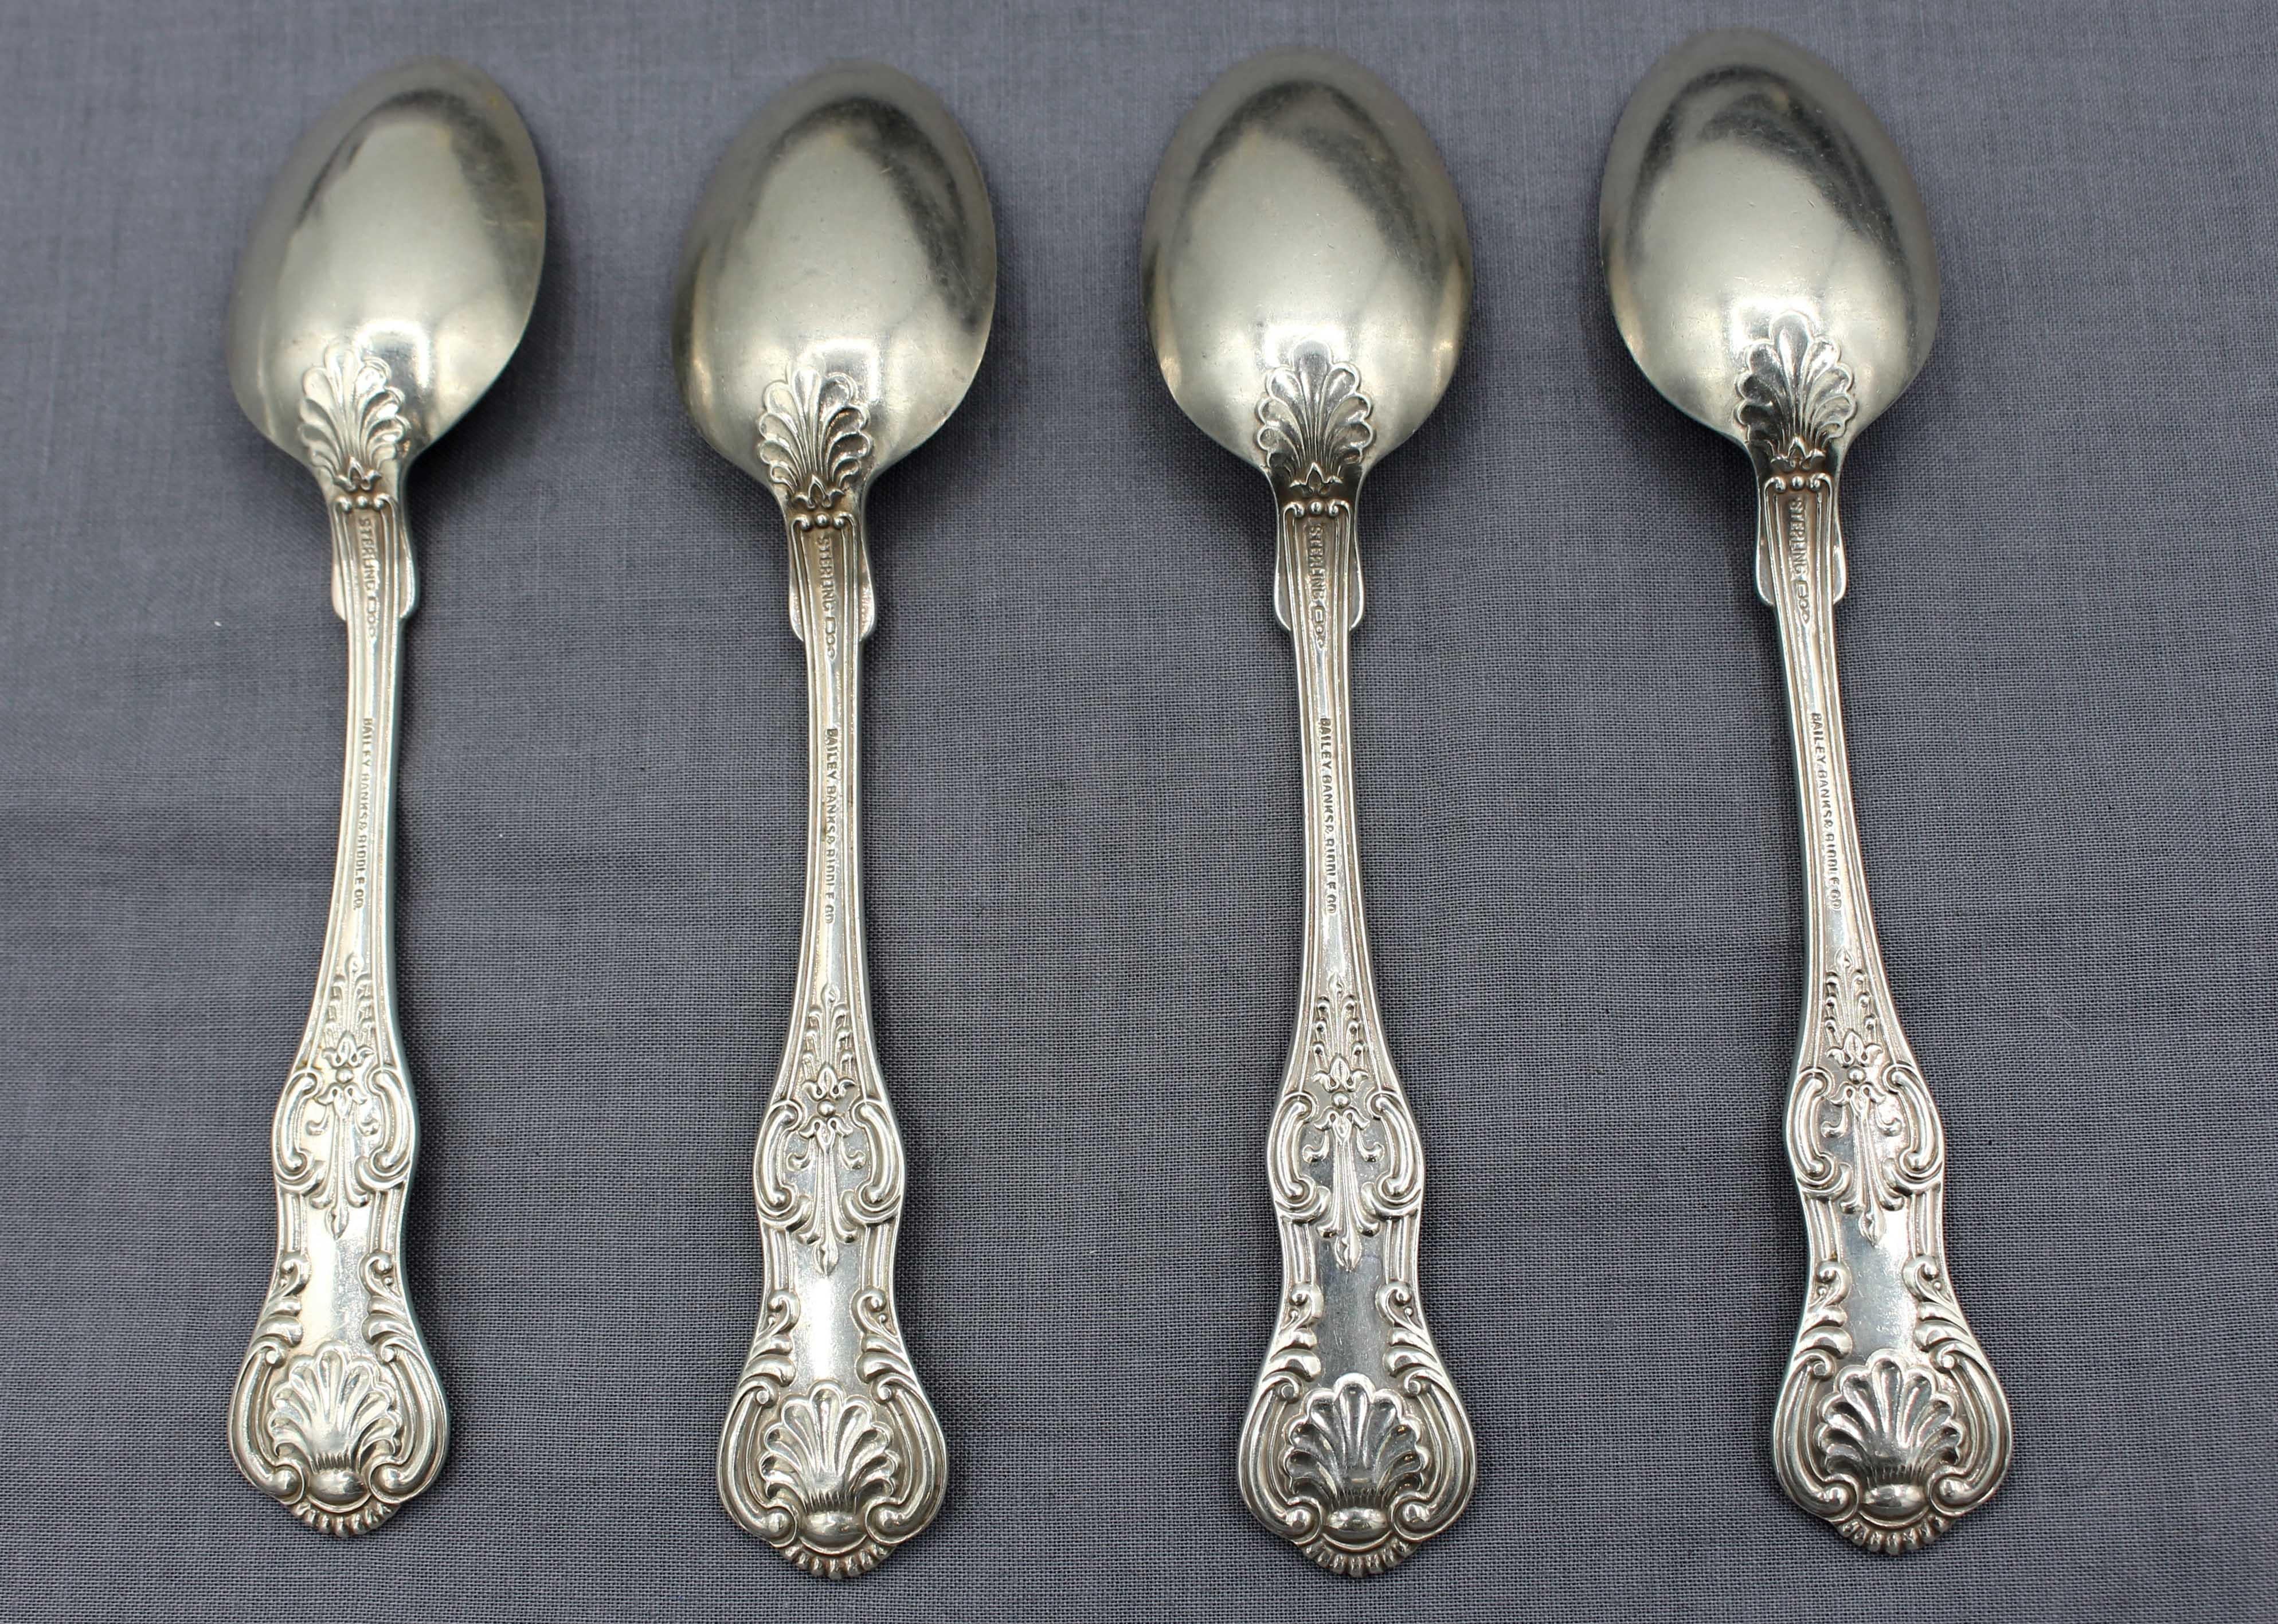 Set of 4 sterling silver teaspoons 